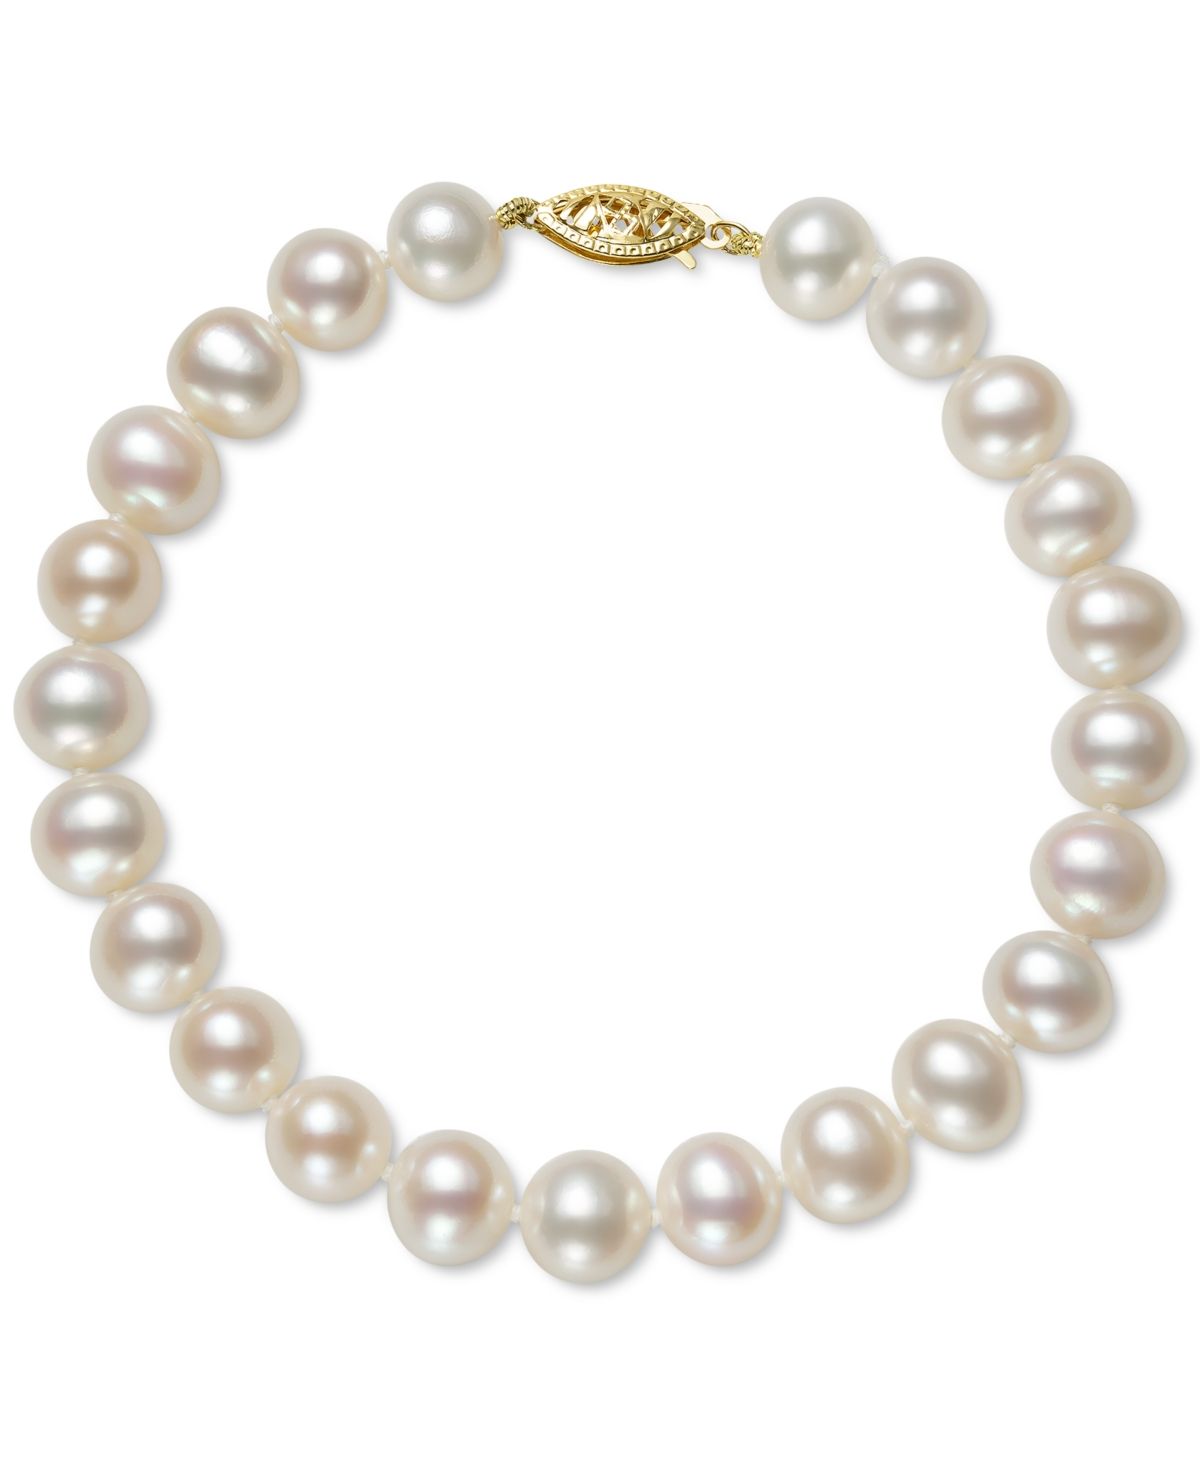 Belle de Mer Cultured Freshwater Pearl Bracelet (7-1/2mm) in 14k Gold | Macys (US)